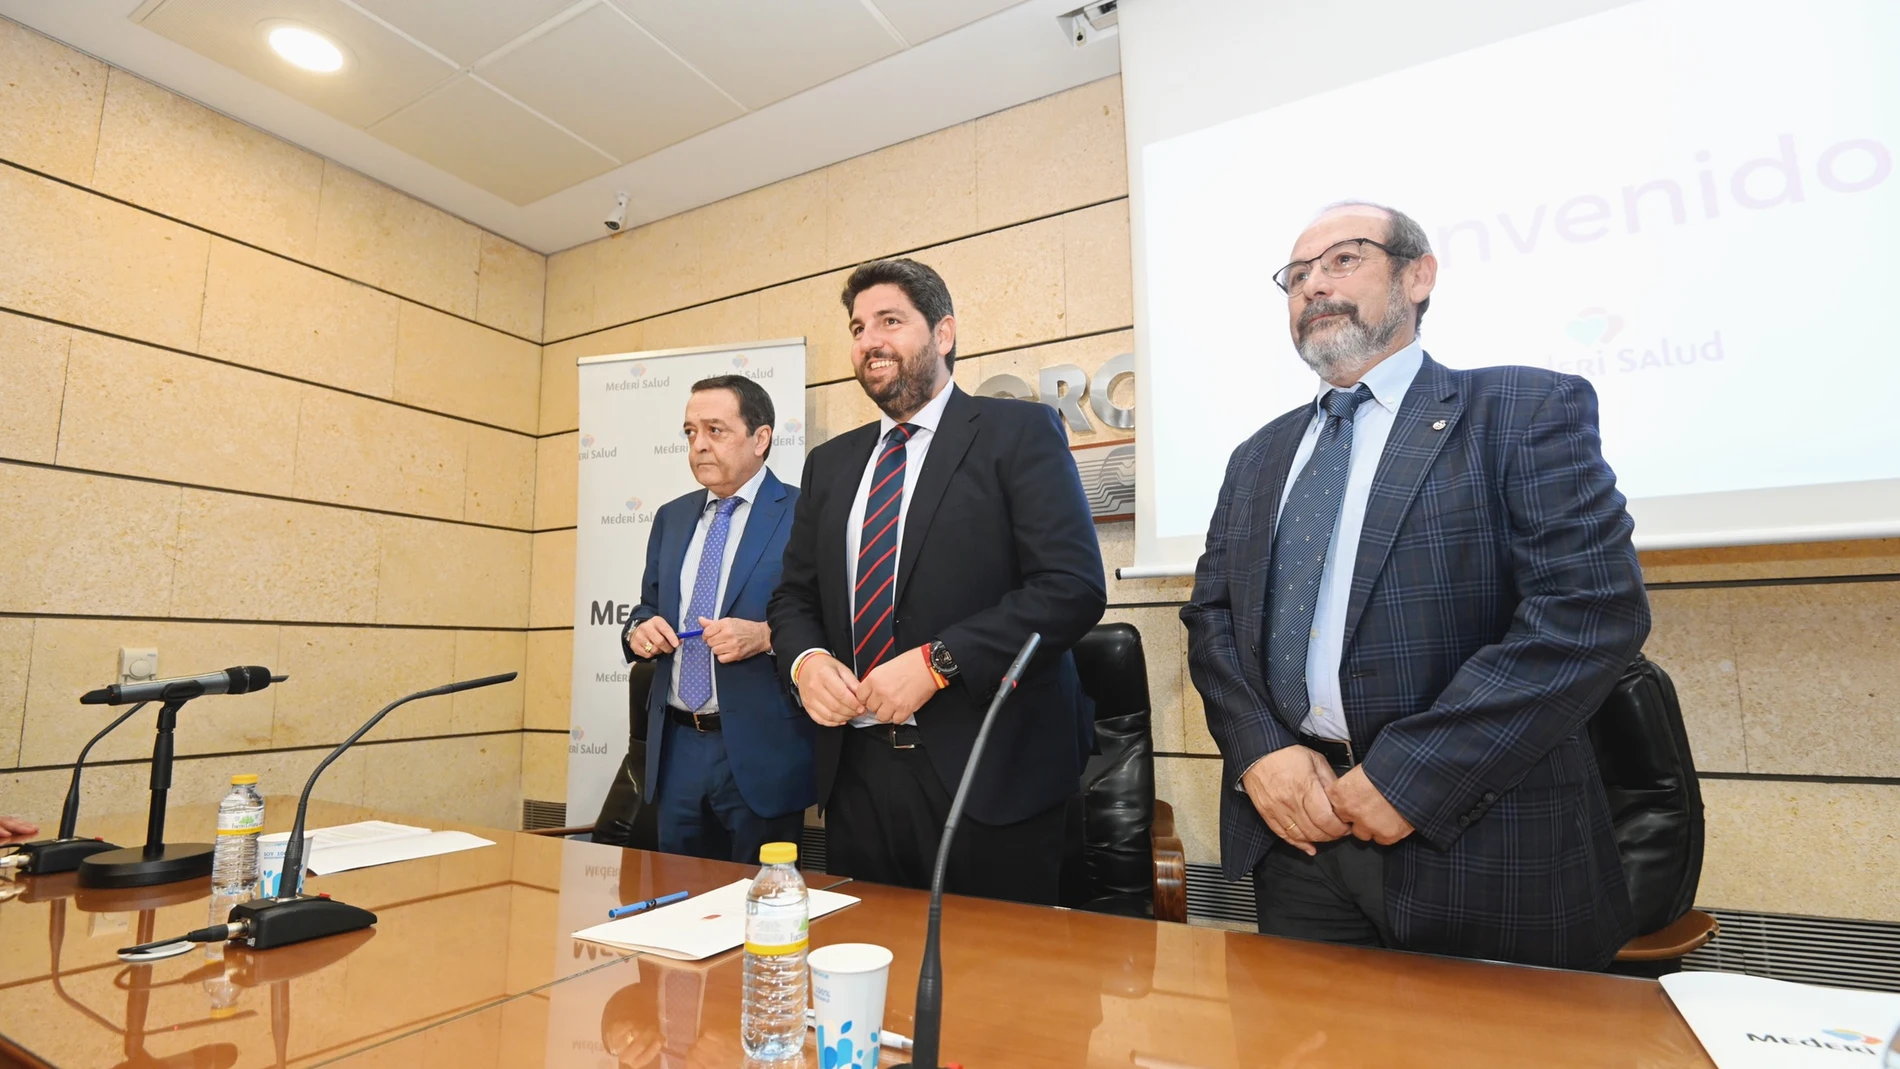 Mederi Salud inaugura un nuevo hospital en Mazarrón